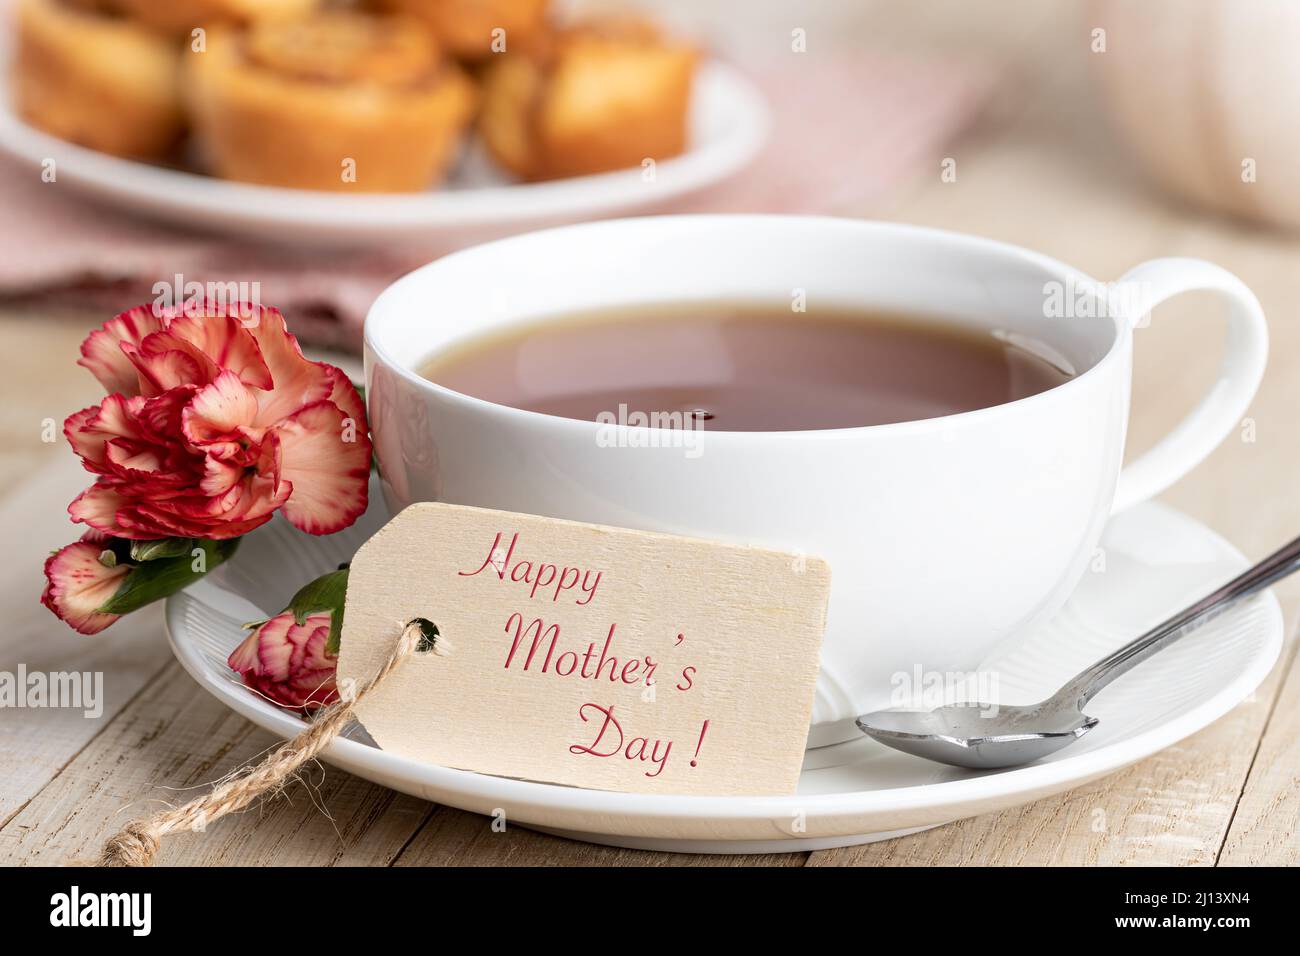 Happy Mothers giorno tag e tazza di tè con garofano rosso su un tavolo di legno Foto Stock